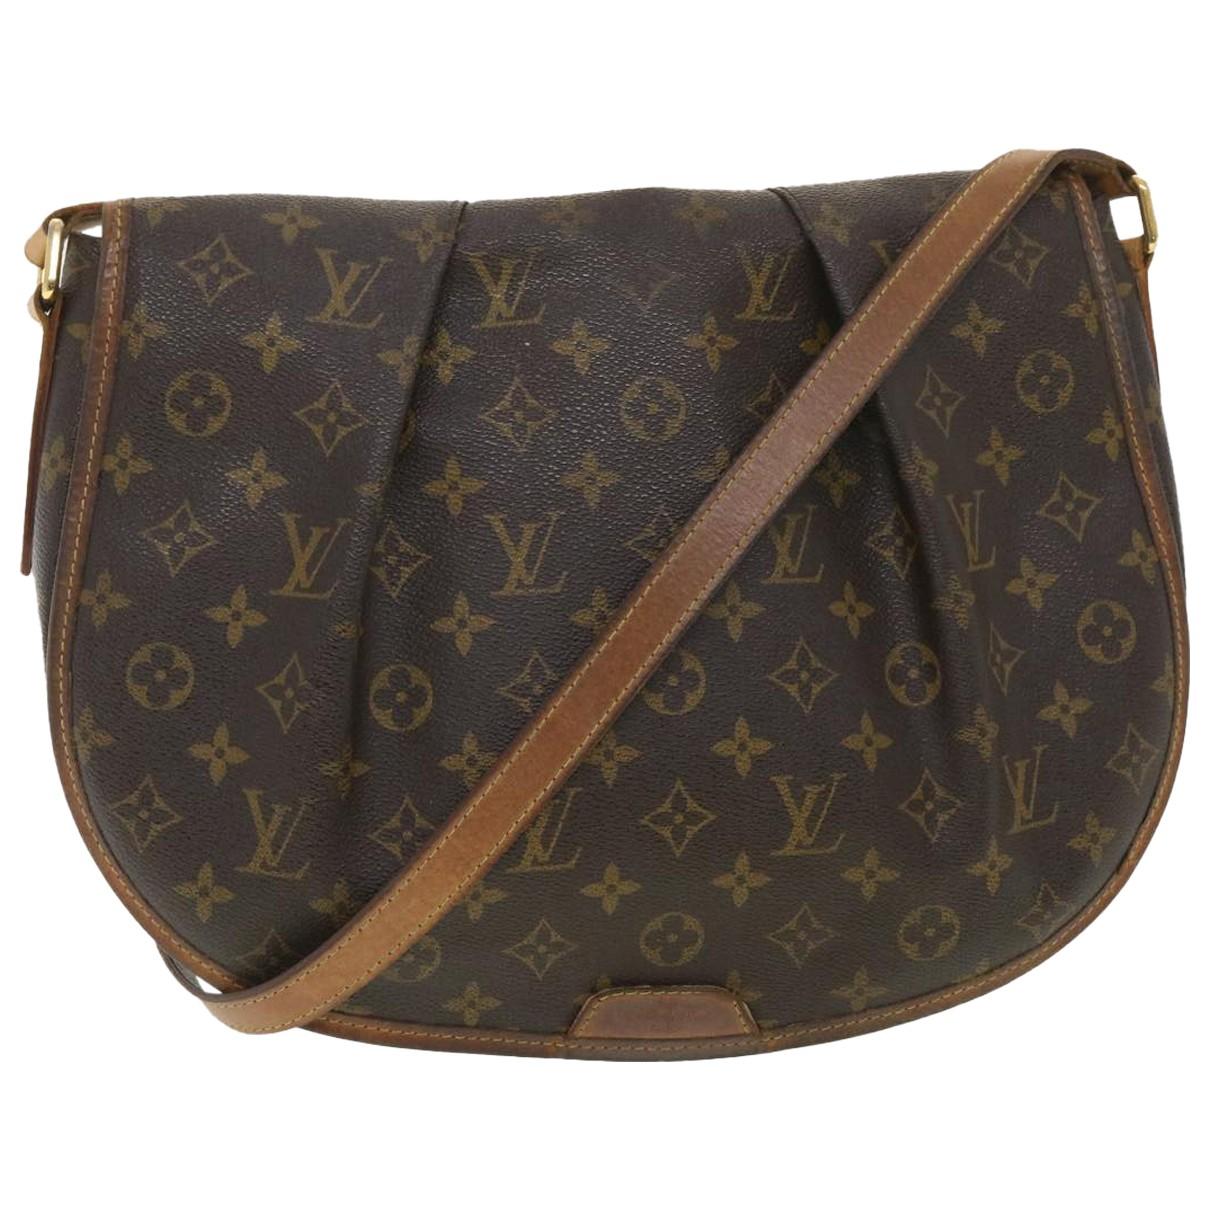 Menilmontant Louis Vuitton Handbags for Women - Vestiaire Collective